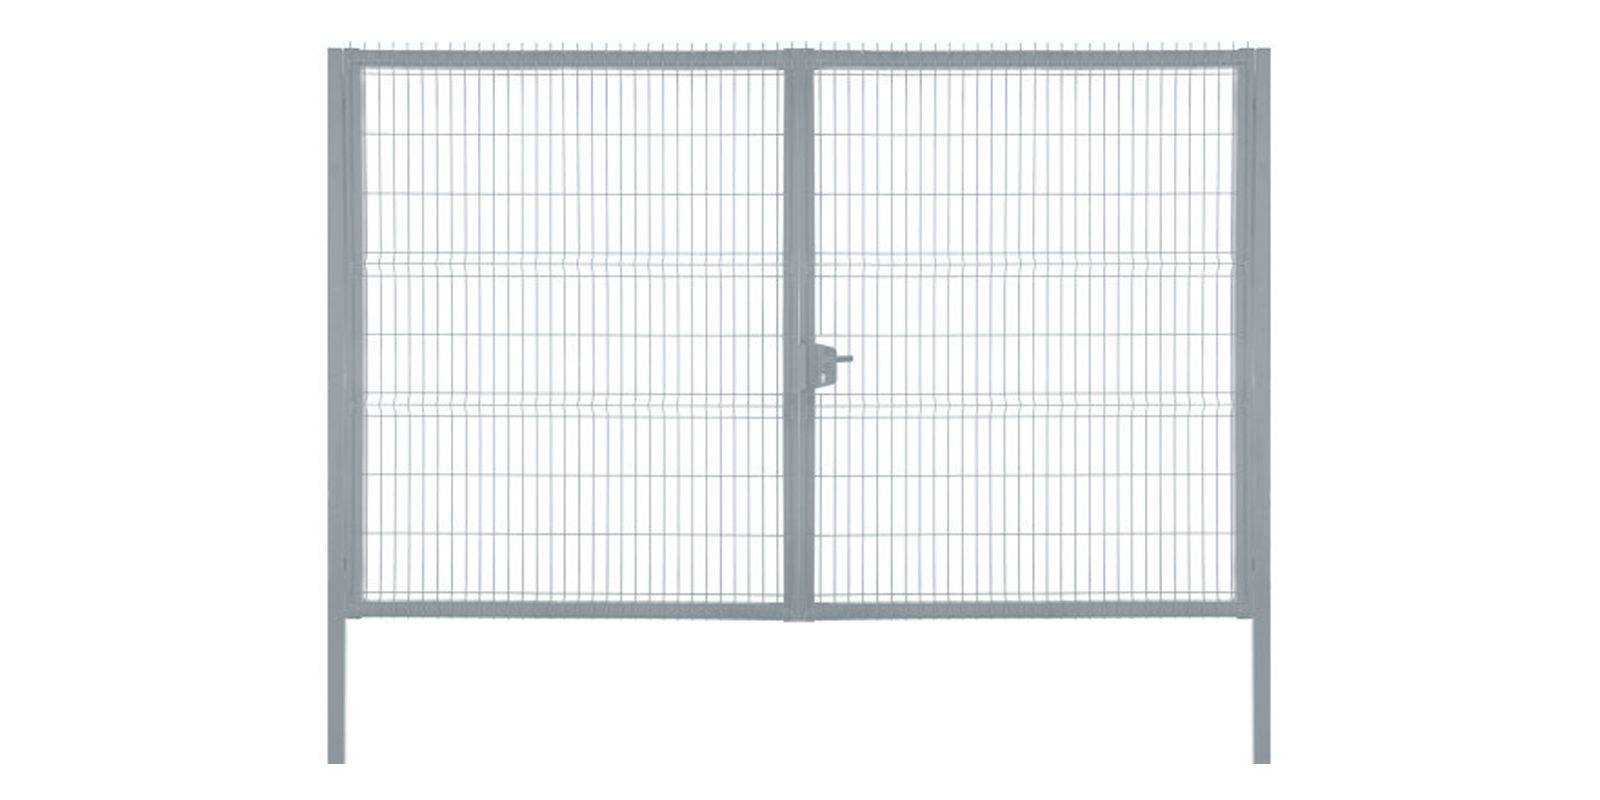 Ворота для панельного ограждения Profi, 2,03 м, ширина 3 м, изображение, фото | Сталь ТД